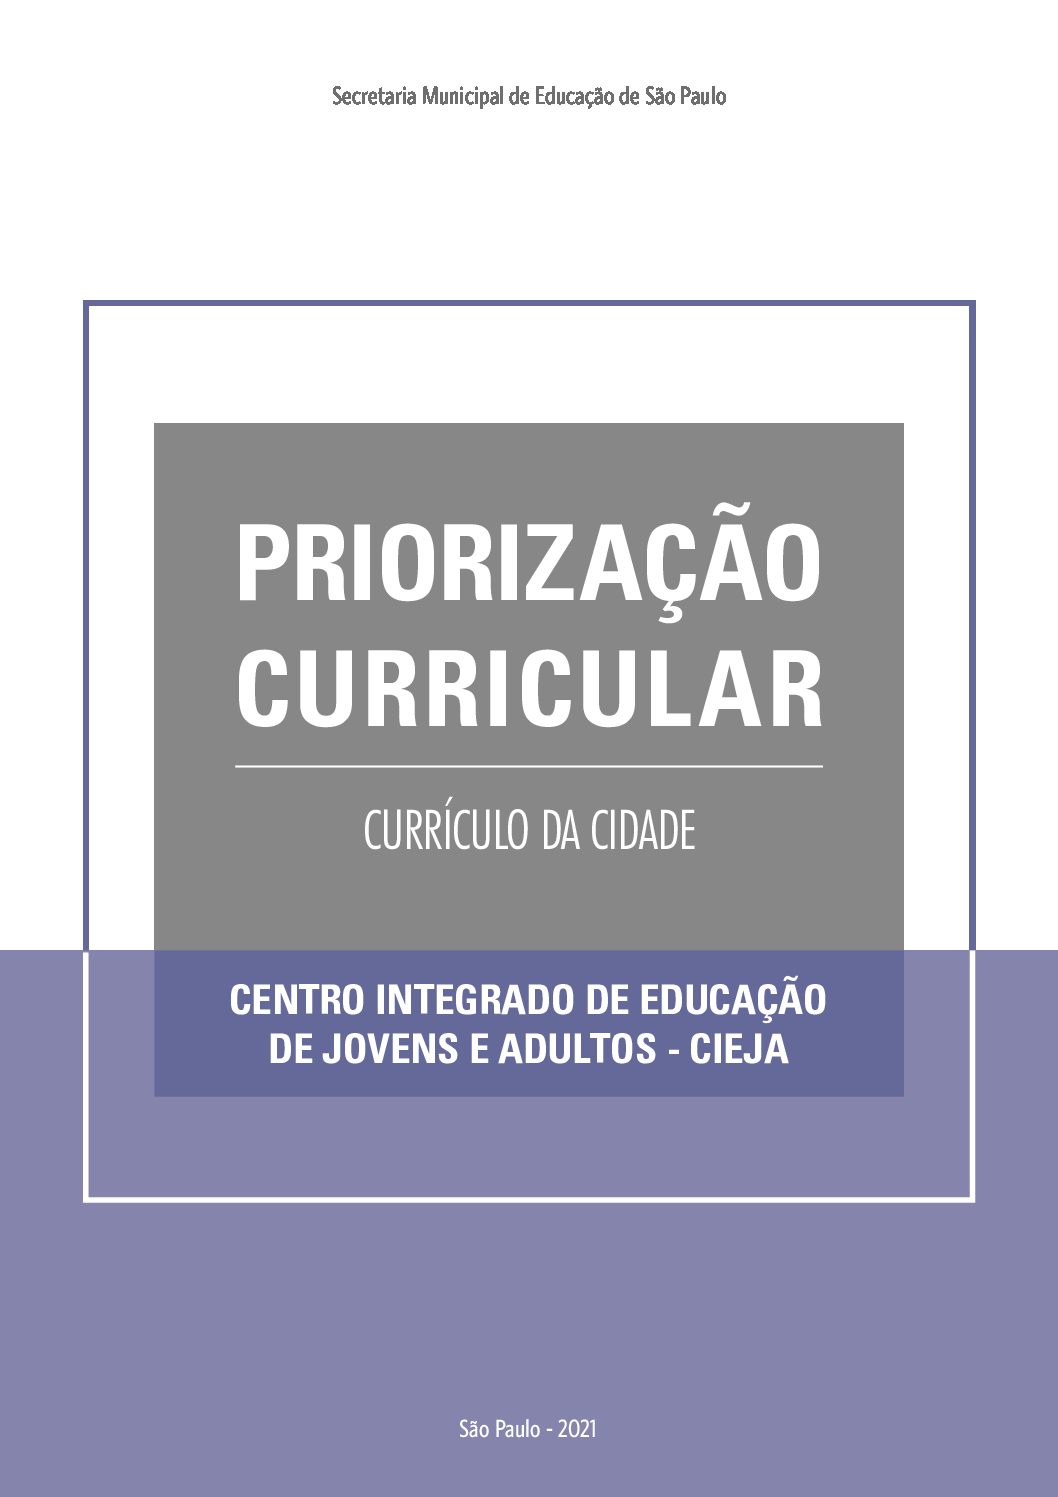 Publicação que apresenta os objetivos de aprendizagem prioritários do Currículo da Cidade da Educação de Jovens e Adultos para o trabalho pedagógico dos Centros Integrados de Educação de Jovens e Adultos – CIEJAs.